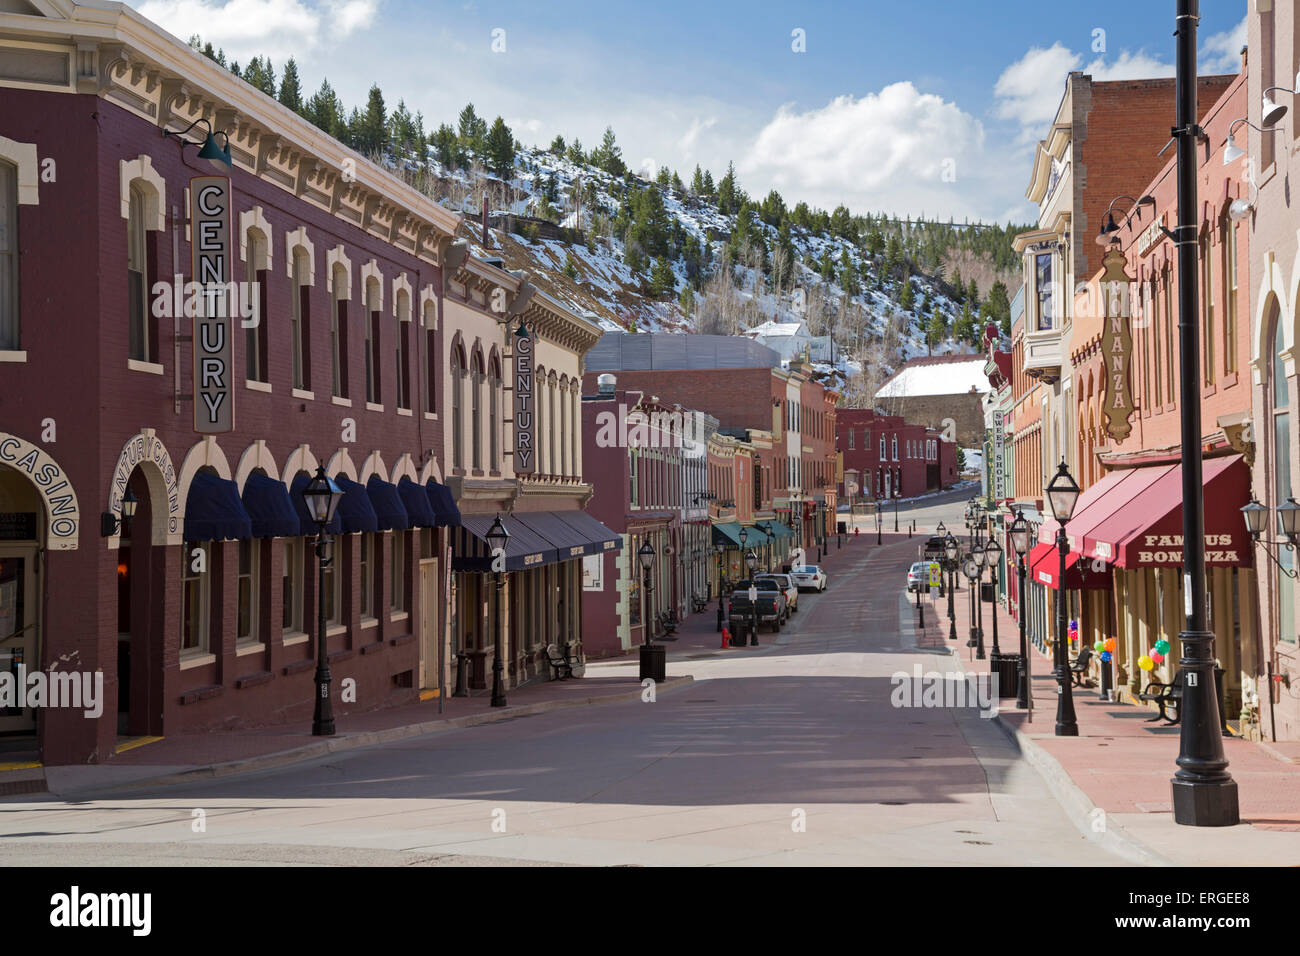 Central City, Colorado - eine Straße im historischen Bezirk von Central City, mitten in den Bergen westlich von Denver. Stockfoto